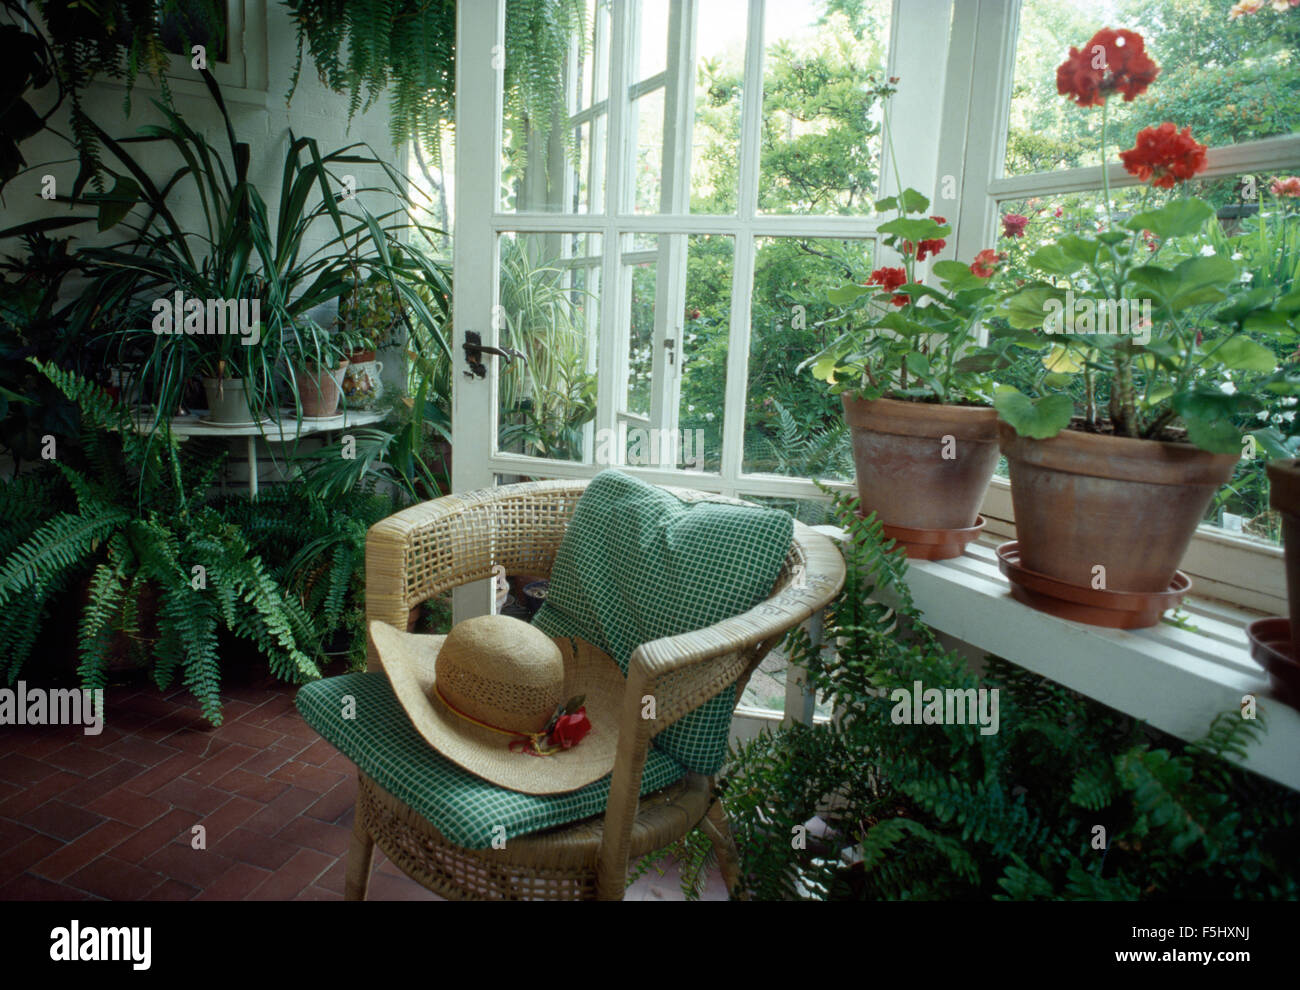 Coussin de chaise en osier vert sur les années 70 en véranda avec plantes vertes Banque D'Images